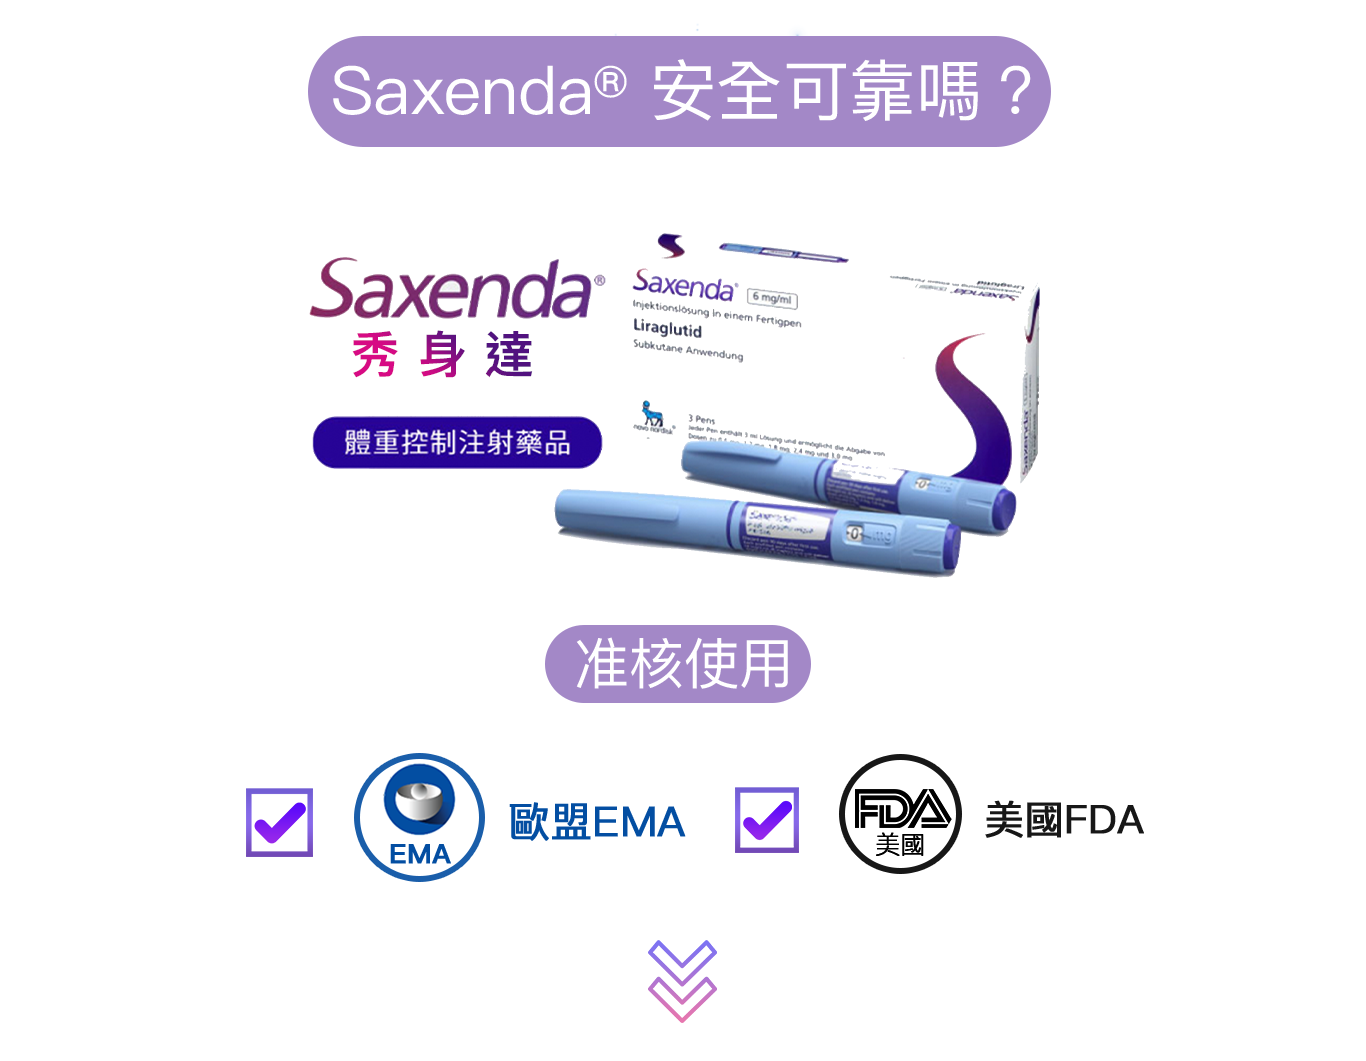 香港正貨Saxenda減重筆,安全可靠嗎?